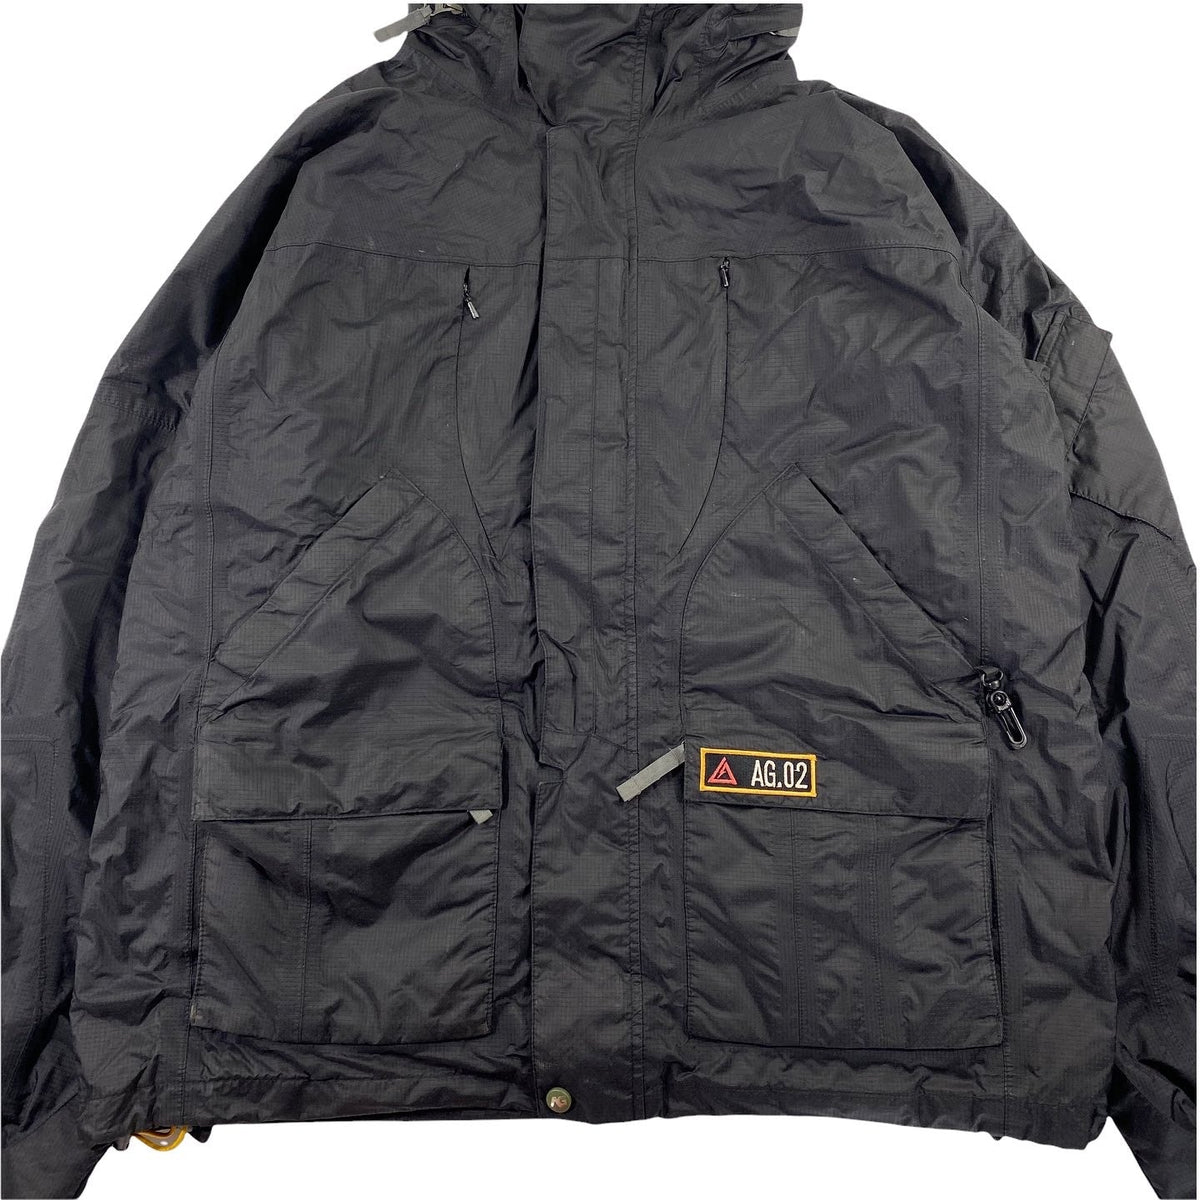 Burton Analog Xenon jacket Sz large – Vintage Sponsor